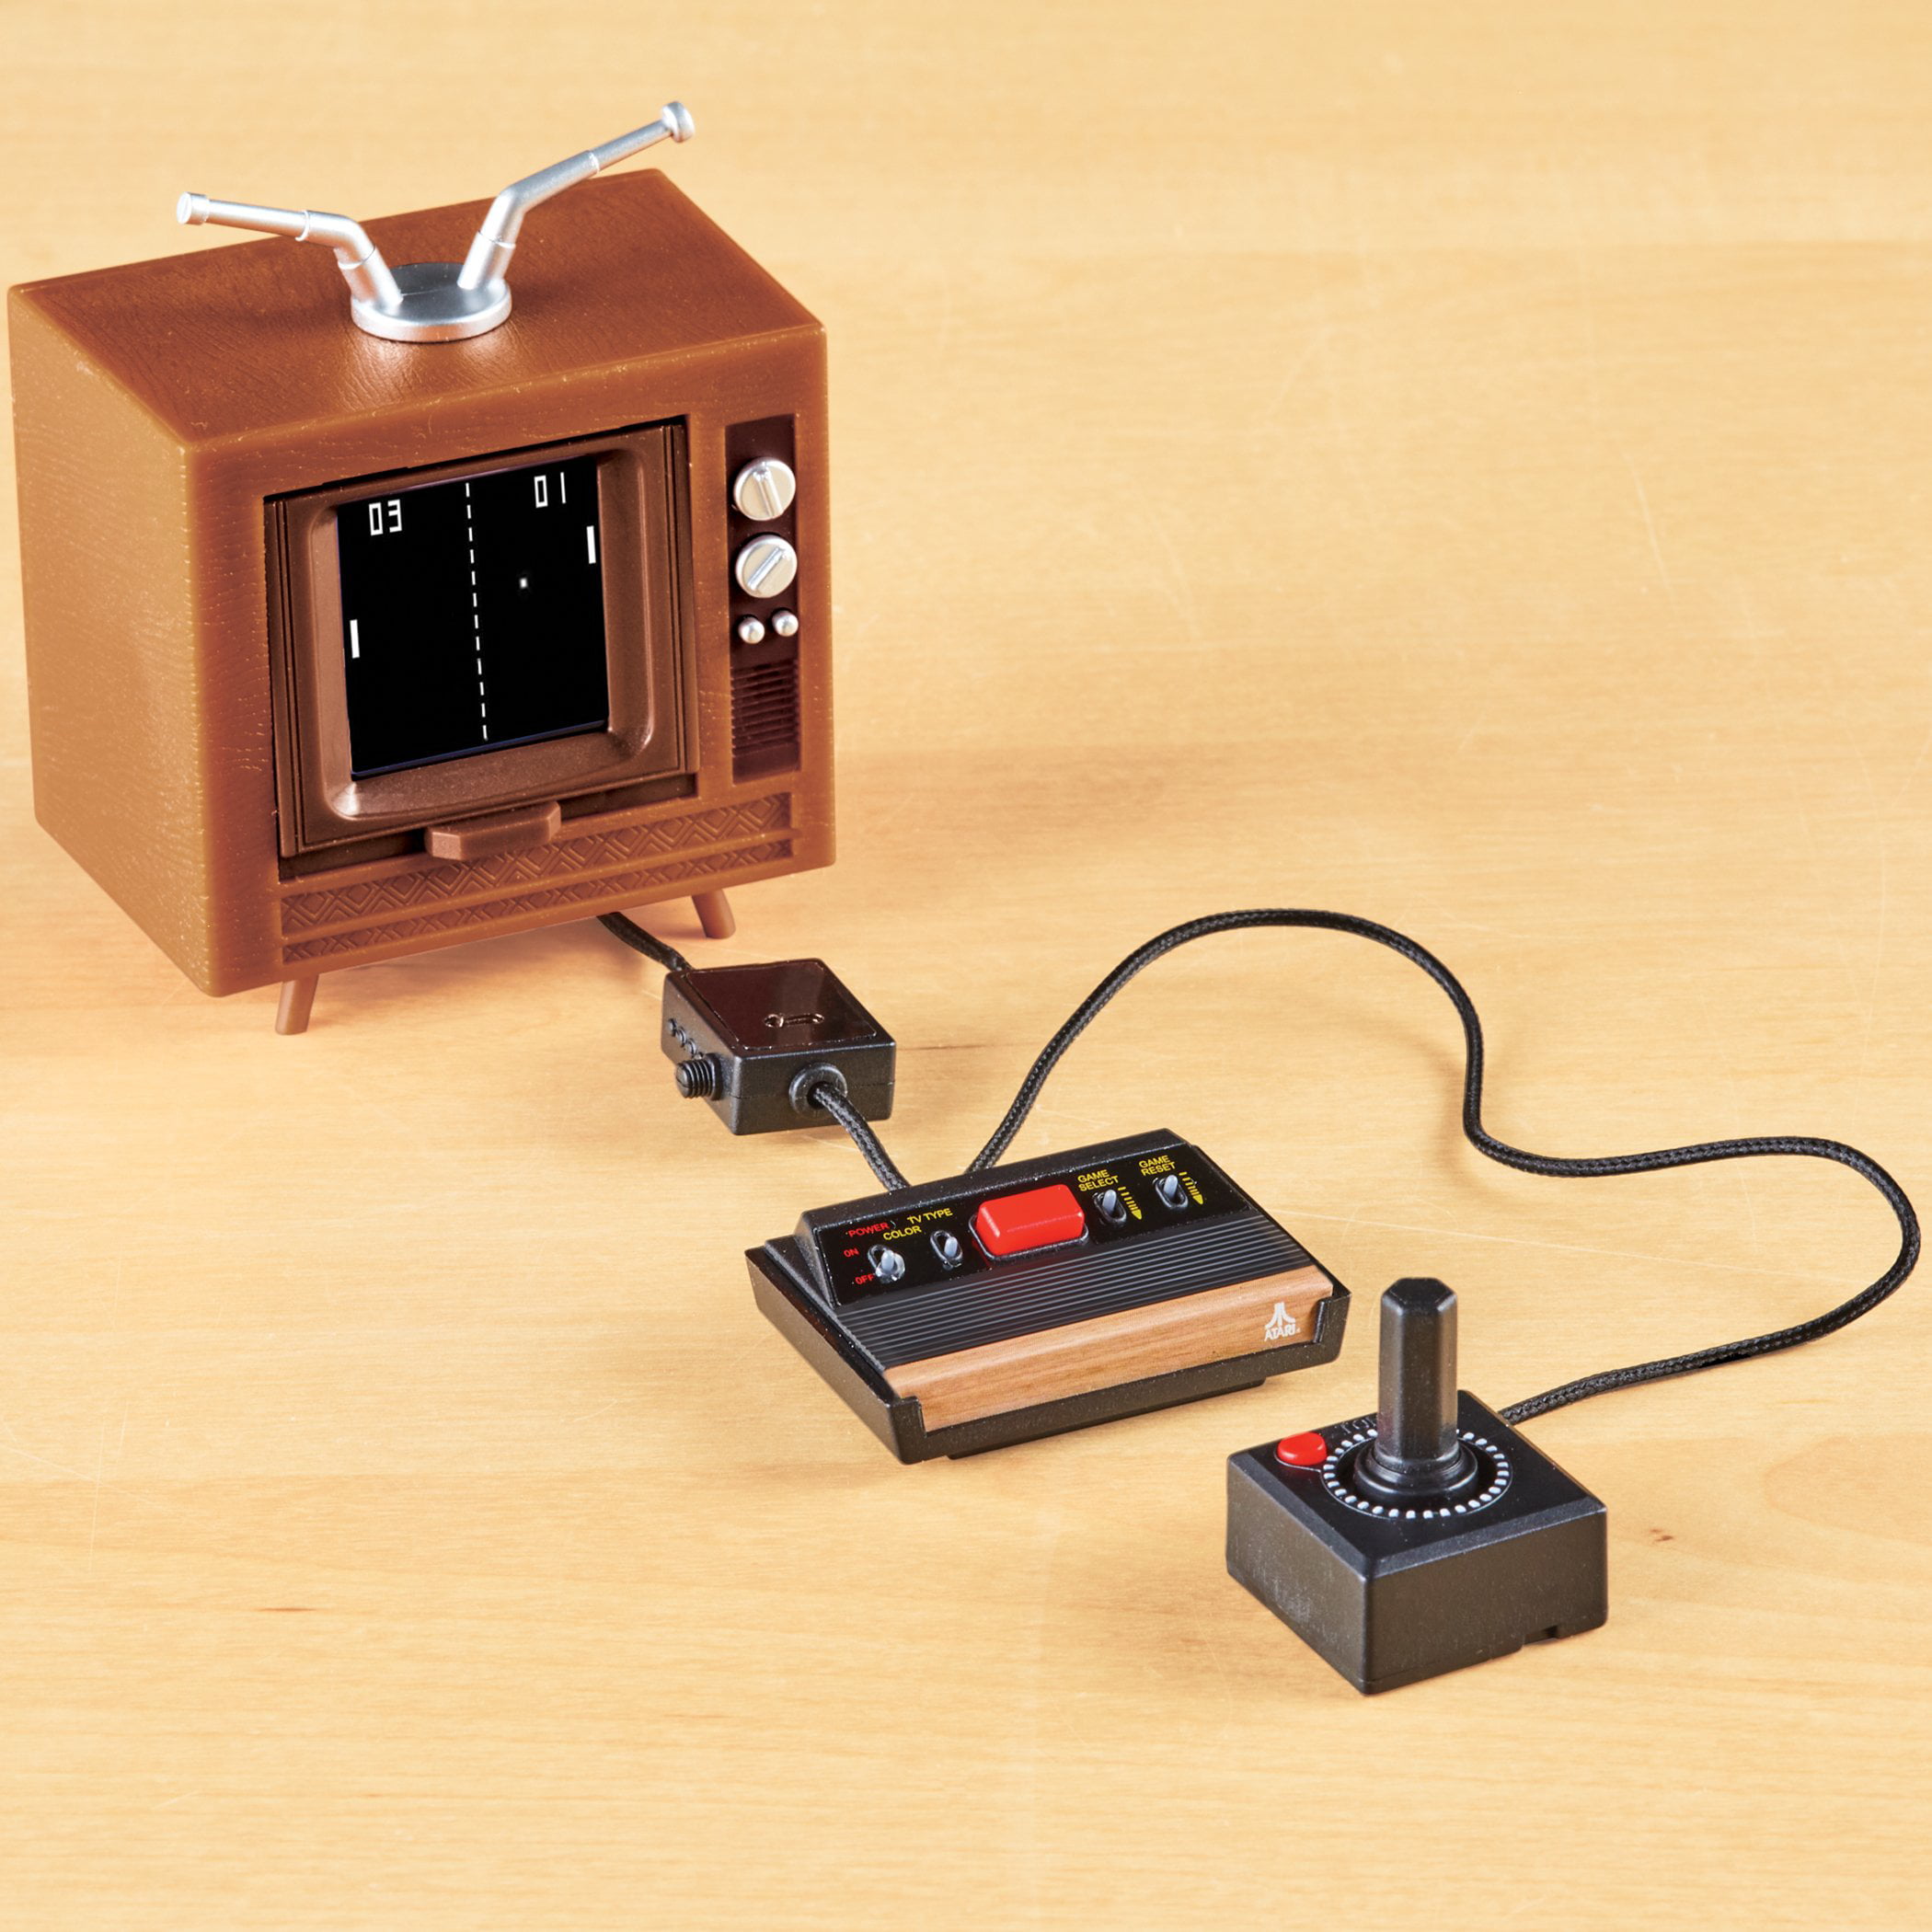 Atari 2600, Atari, vídeo game Atari, - Personal Game Toys